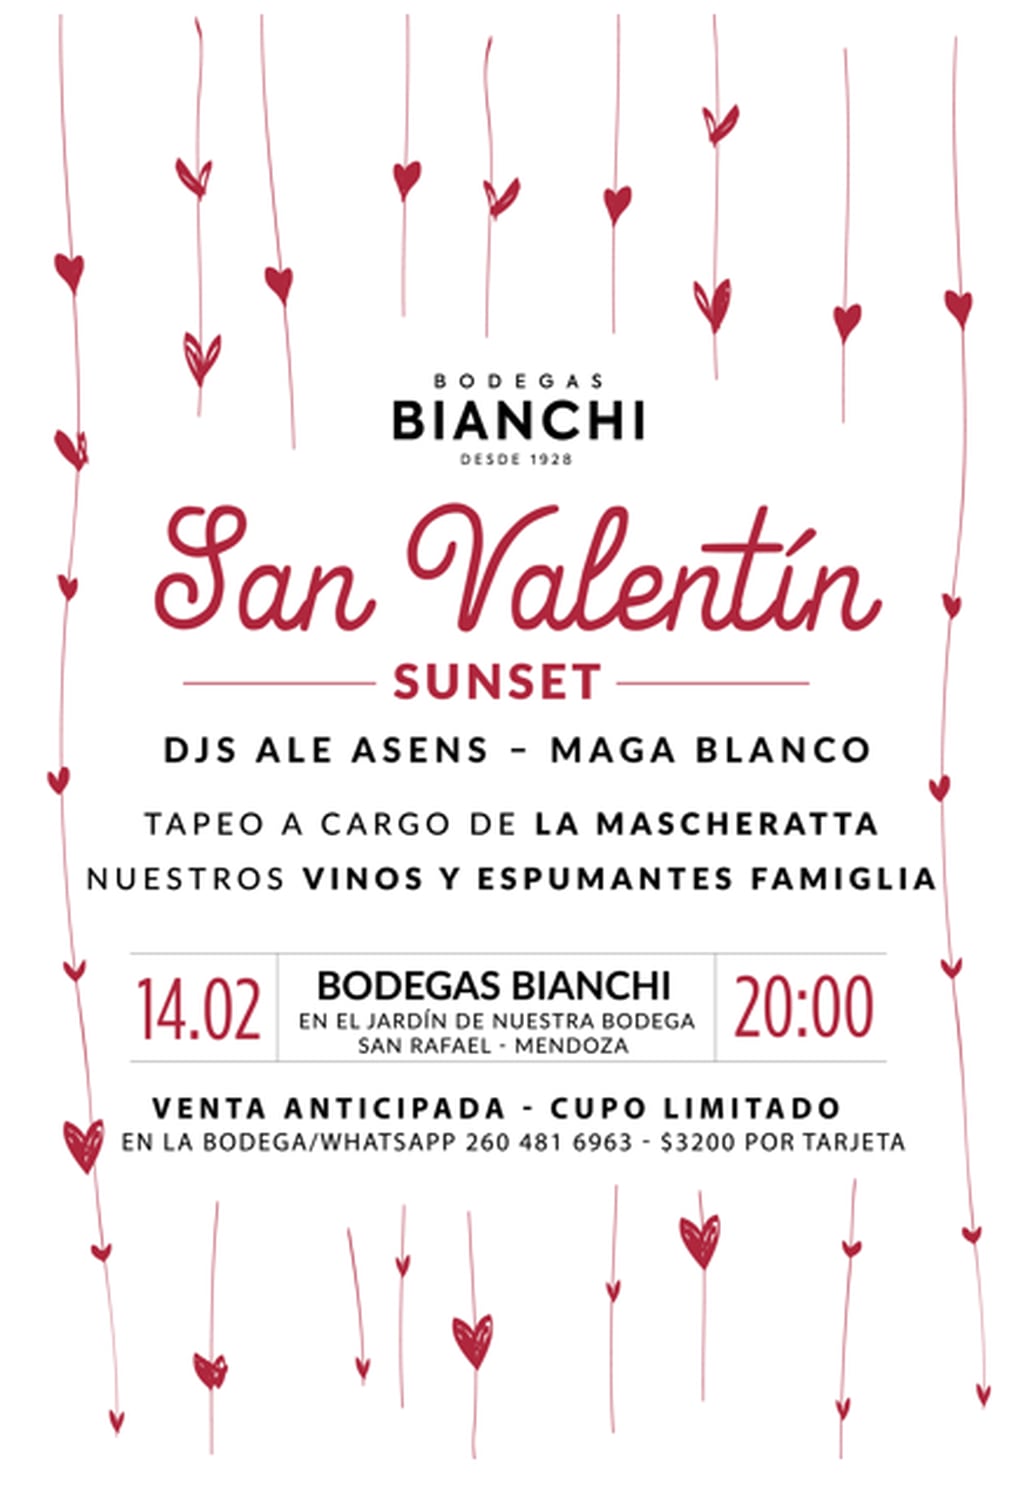 En el Sur provincial, Bodegas Bianchi ofrecerá un sunset especial. - Gentileza